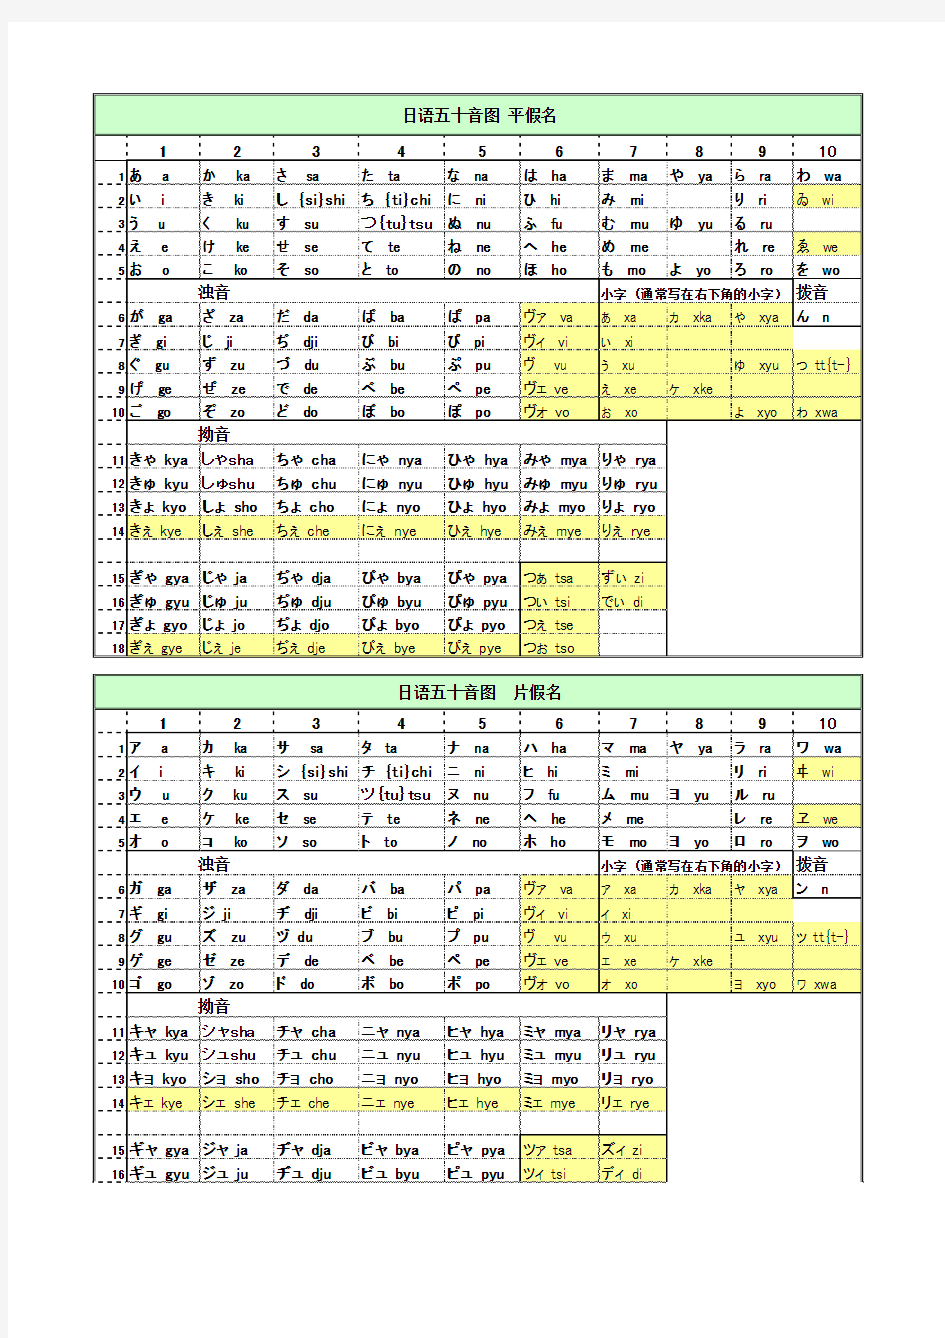 日语五十音图(平假名 片假名 罗马字 含最新发音) 打印版 Excel表格